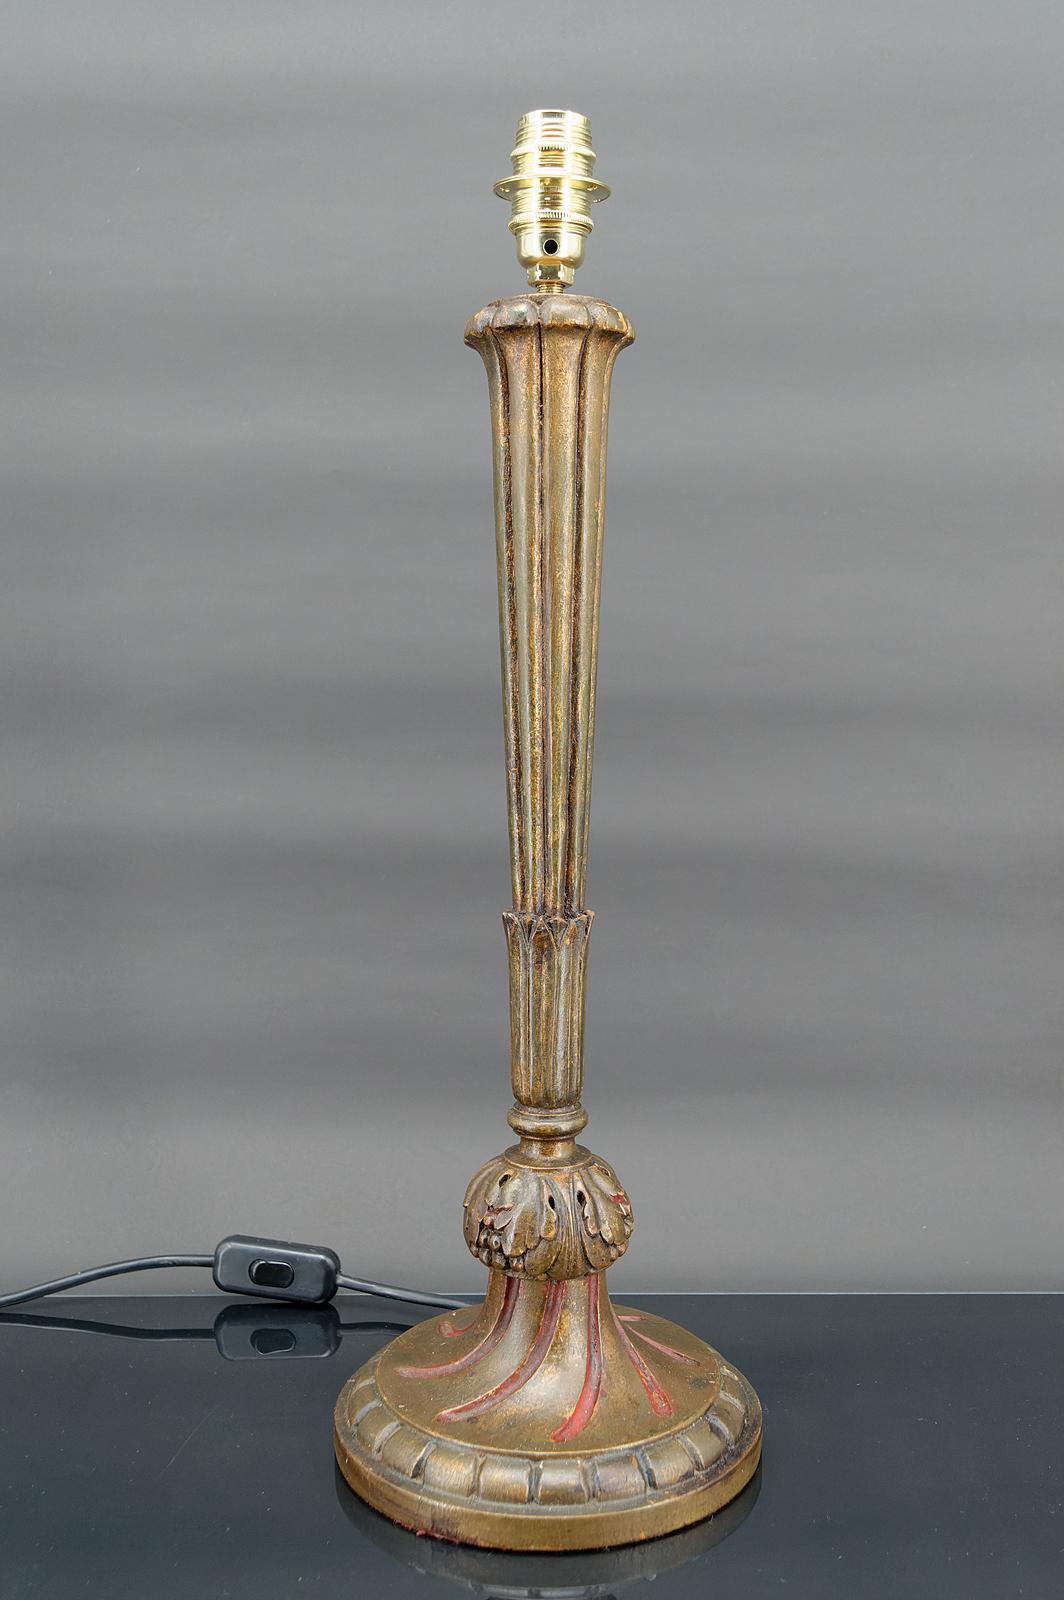 Große Lampe aus vergoldetem Holz.
Art Deco.
Frankreich, um 1920

In gutem Zustand, Strom OK.

Abmessungen:
Höhe 51 cm
Durchmesser 18 cm